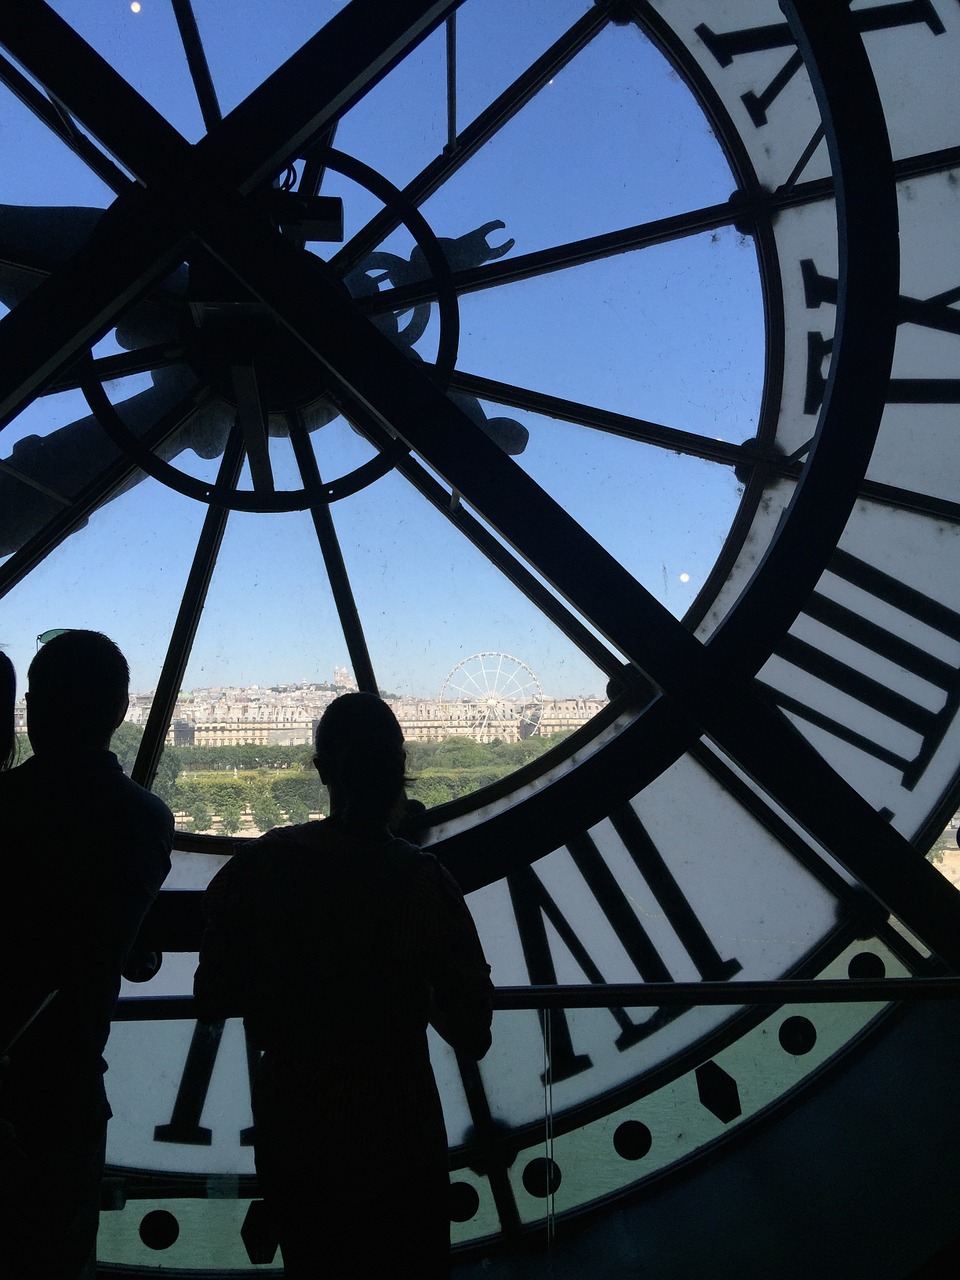 Laikrodis, Paris, France, Turizmas, Architektūra, Laikas, Europietis, Orientyras, Prancūzų Kalba, Turistinis